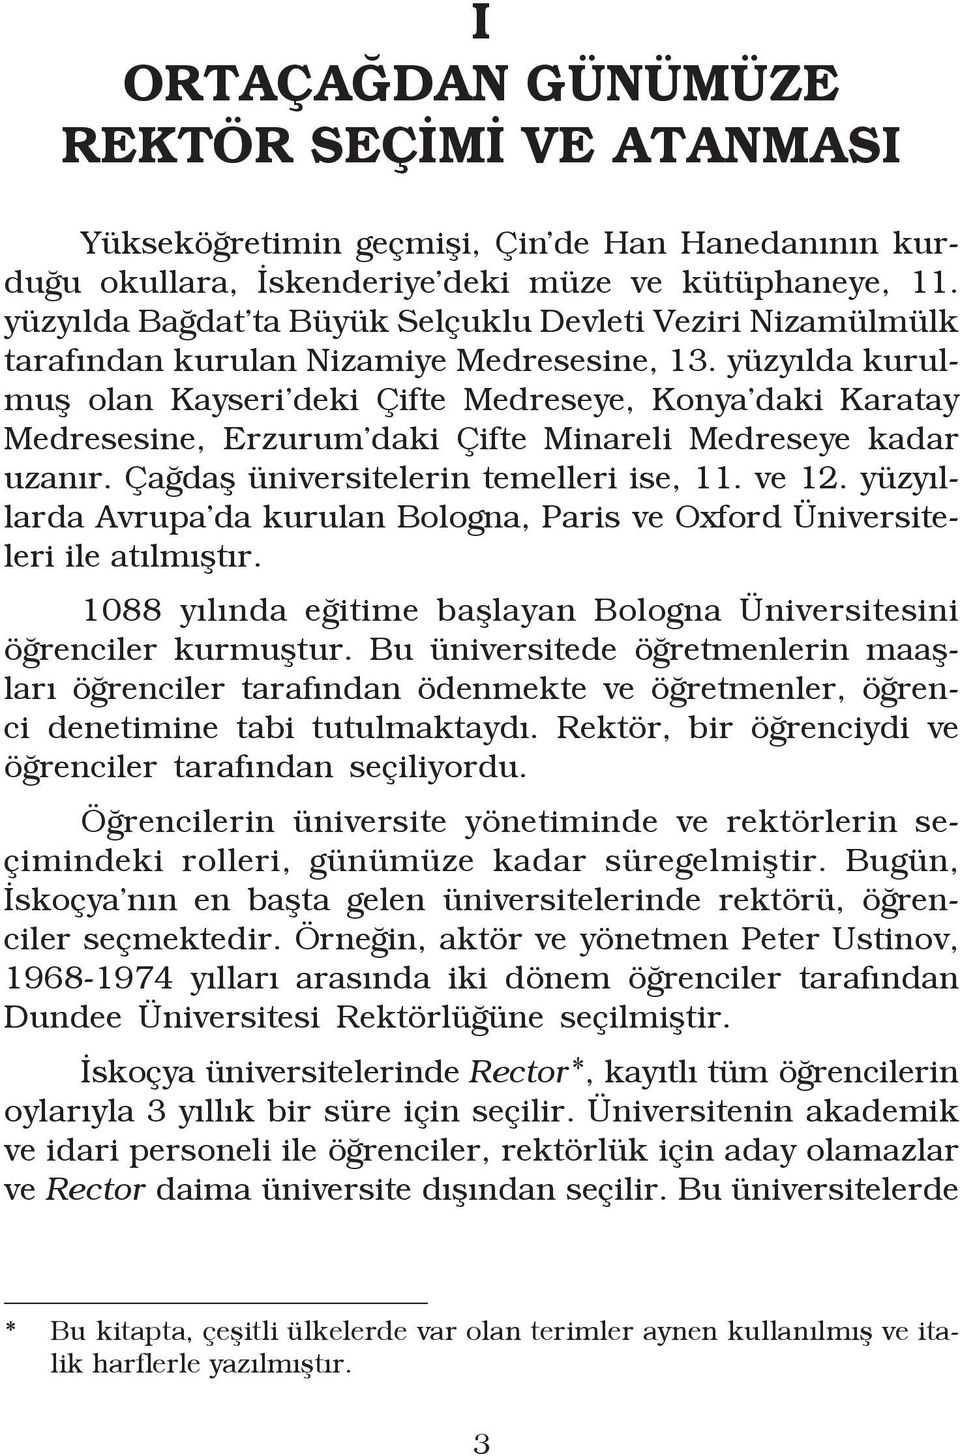 yüzyılda kurulmuş olan Kayseri deki Çifte Medreseye, Konya daki Karatay Medresesine, Erzurum daki Çifte Minareli Medreseye kadar uzanır. Çağdaş üniversitelerin temelleri ise, 11. ve 12.